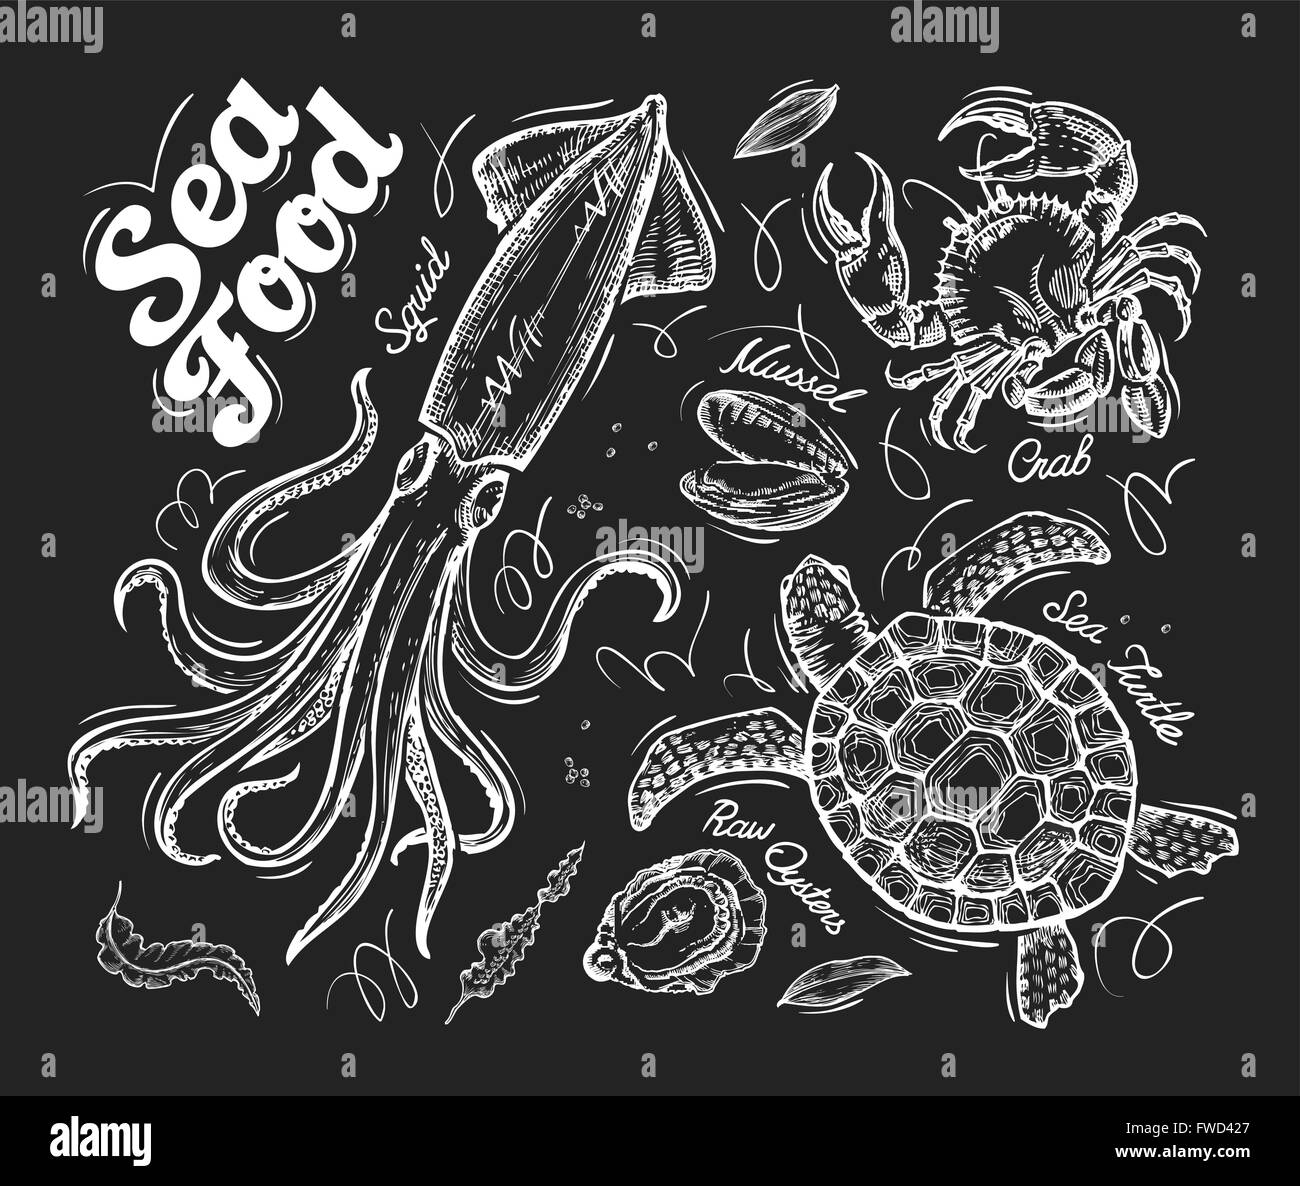 Fisch und Meeresfrüchte. Gezeichnete Vektor Handskizze von einer Schildkröte, Krabben, Muschel, Austern, Tintenfisch Stock Vektor